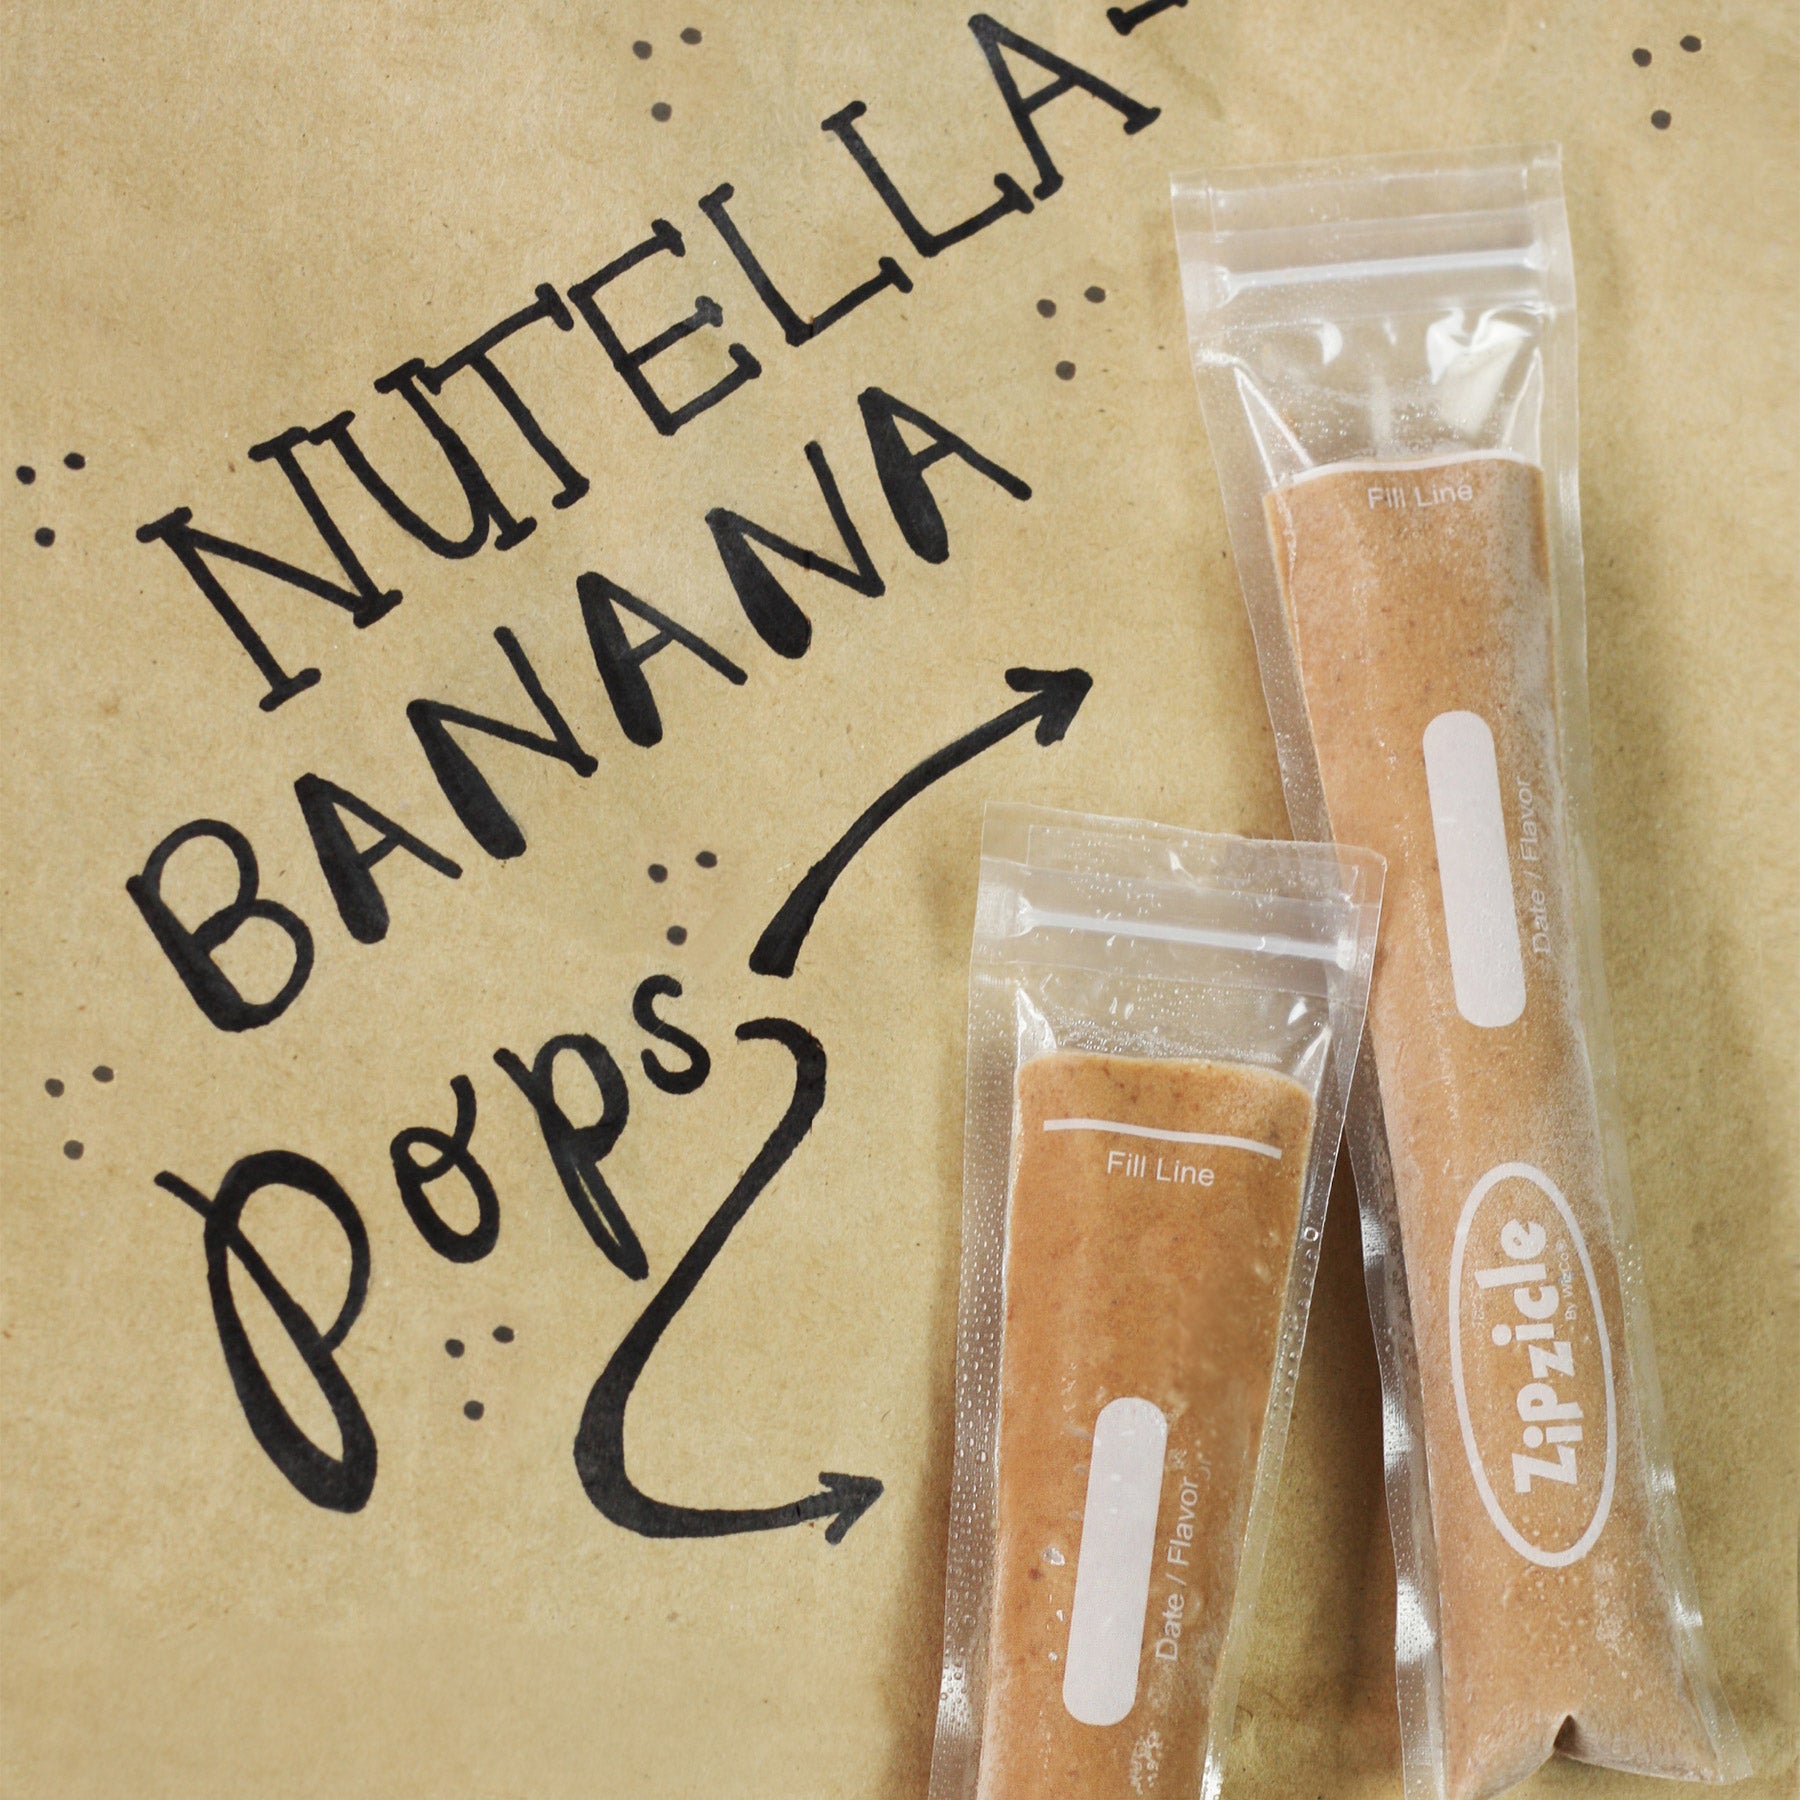 Nutella Banana Ice Pop